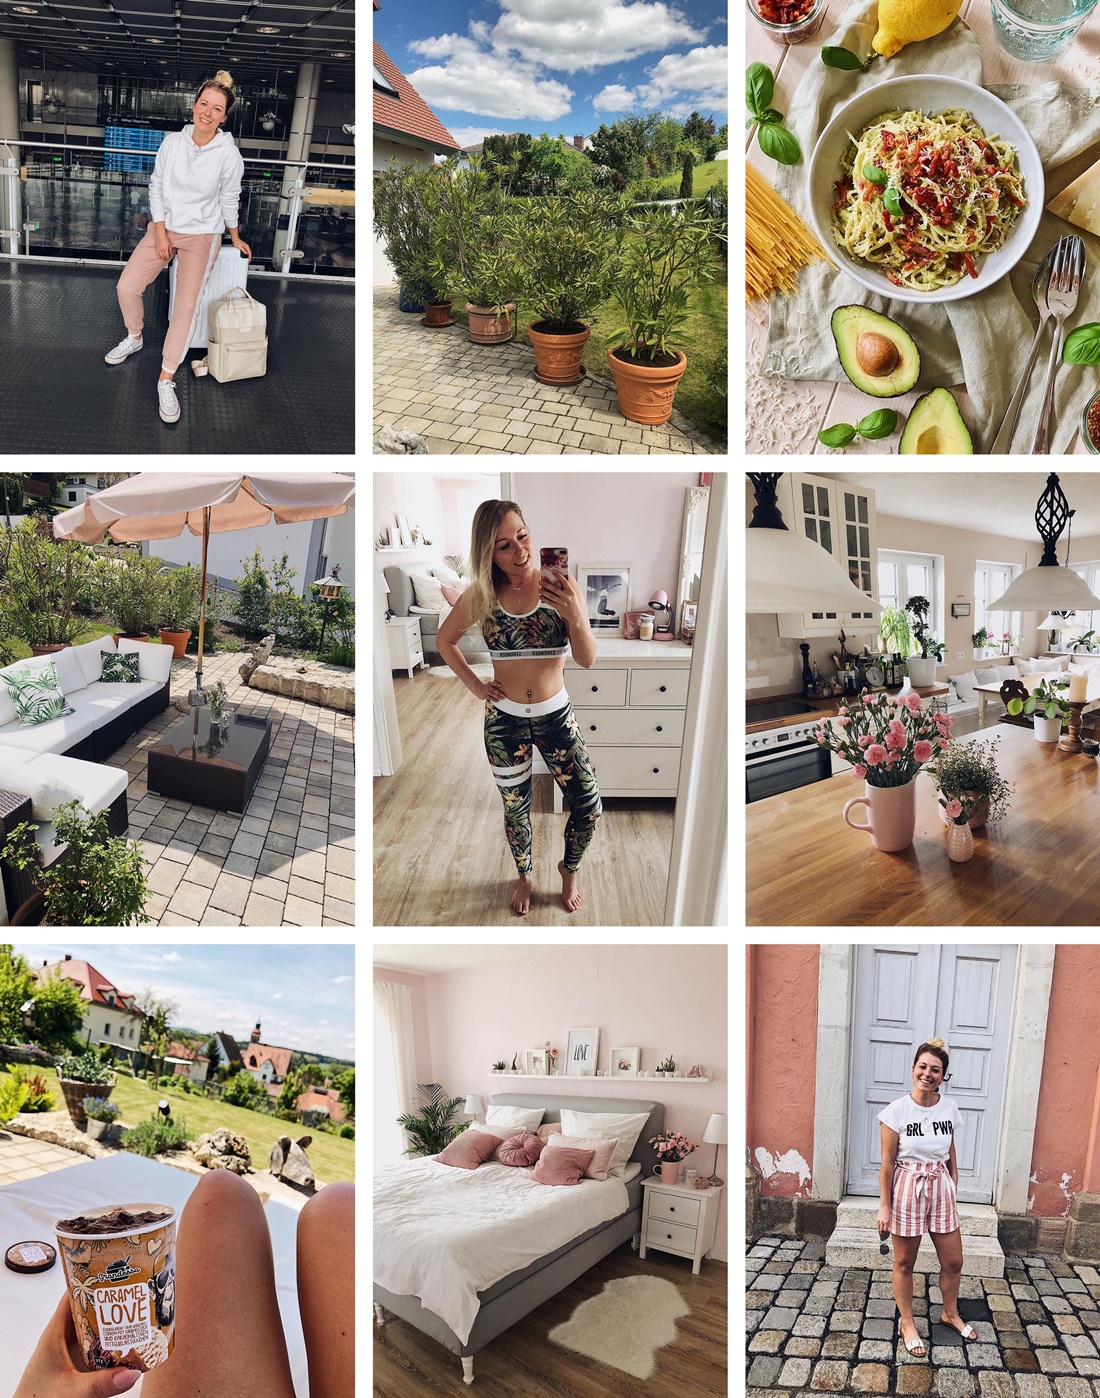 Mai 2019-Urlaub-sommer-vatertag-muttertag-garten-pressereise türkei-rezepte-outfits-haus-interior-food-instagram-personal-monatsrückblick-fashion-lifestyle-blogger-fashionkitchen